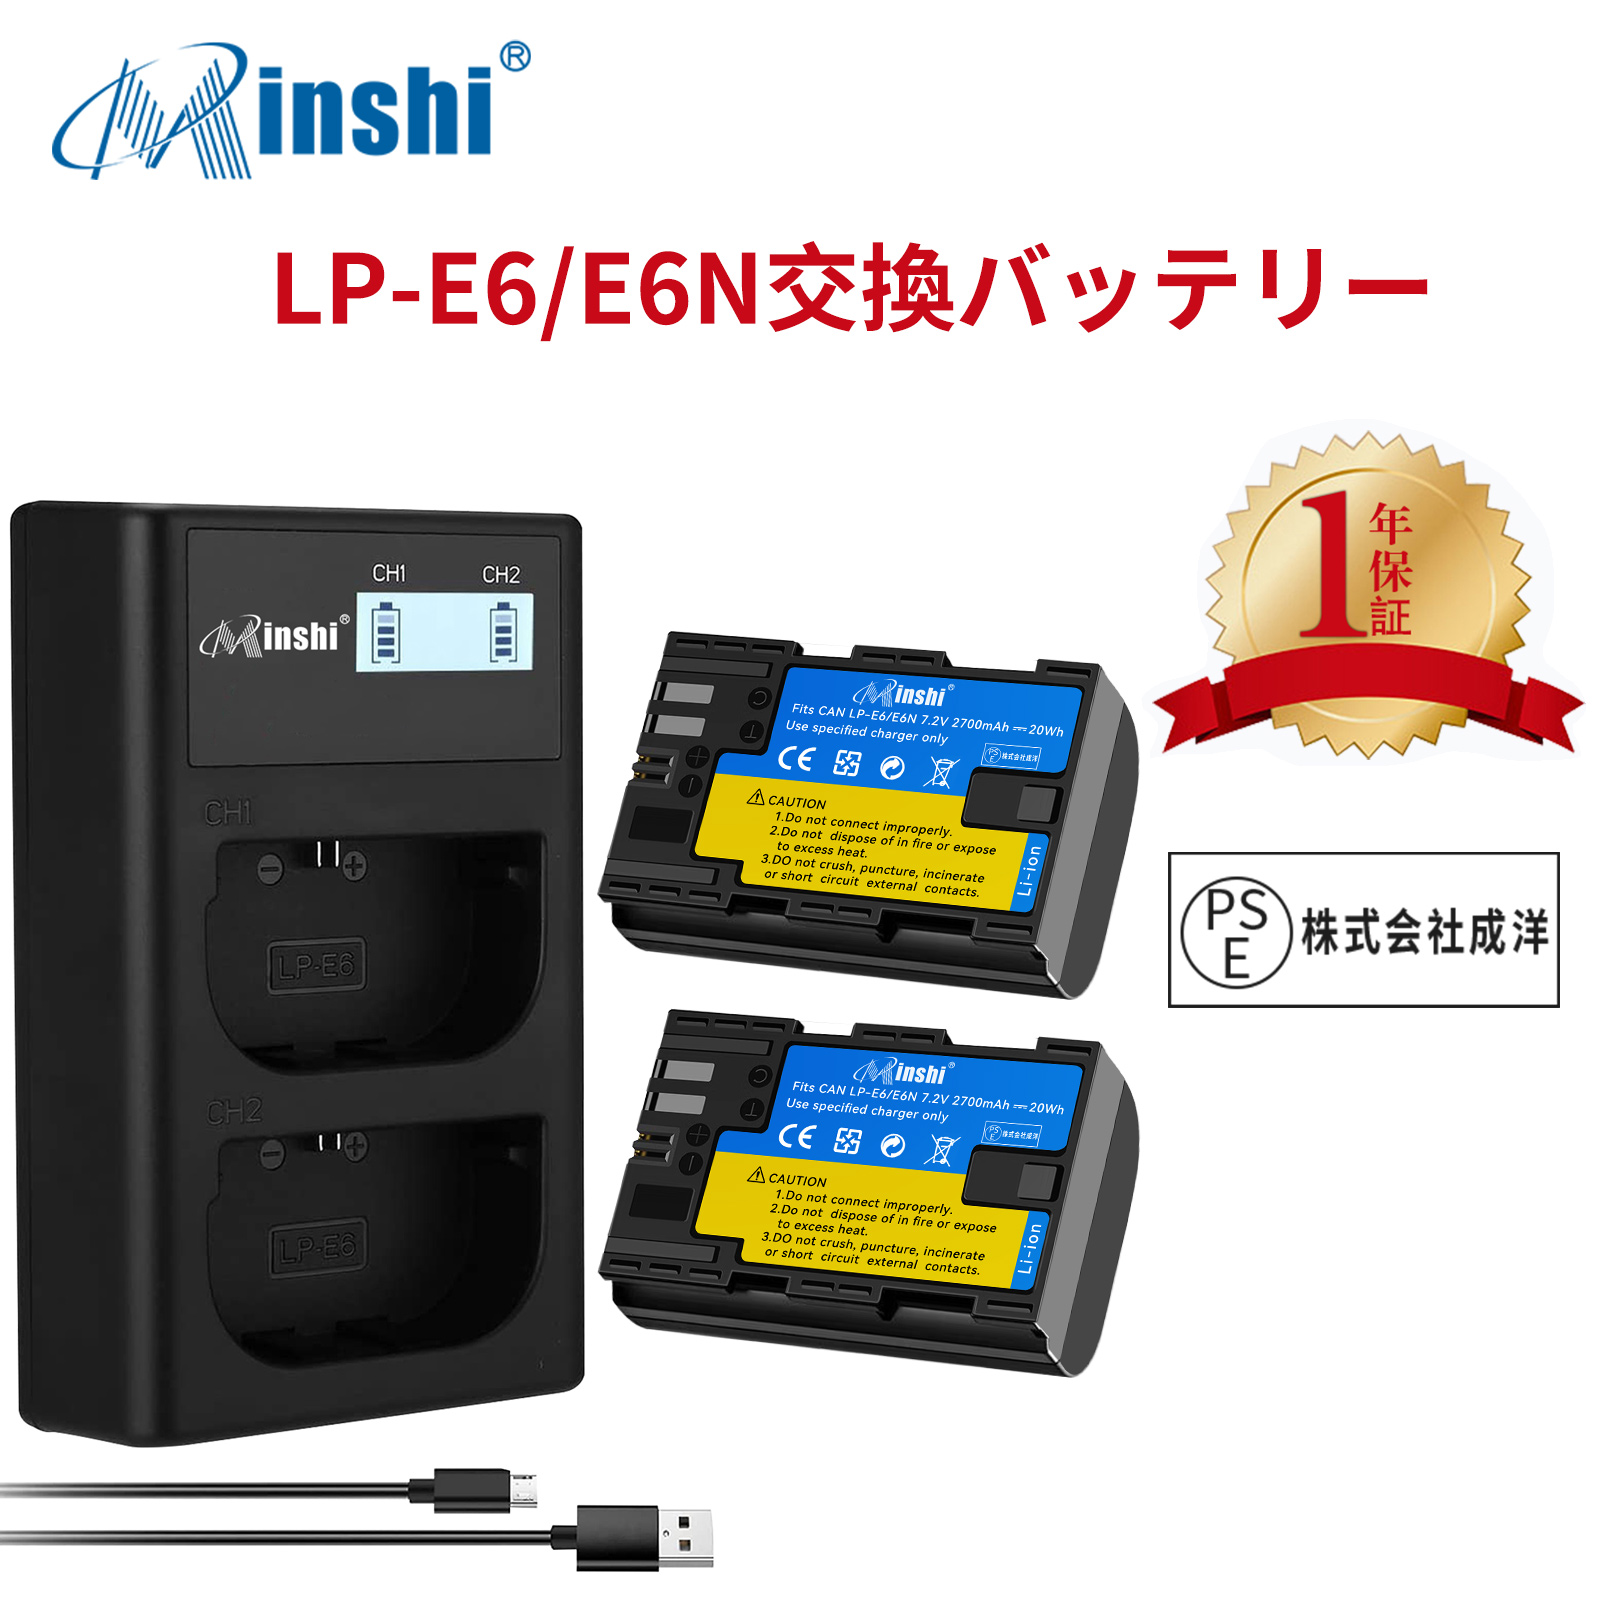 【２個セット】minshi Canon EOS 80D LP-E6  LP-E6N EOS6D CANON 80D 【2700mAh 7.2V 】【互換急速USBチャージャー】 高品質 LP-E6NH 交換用バッテリー